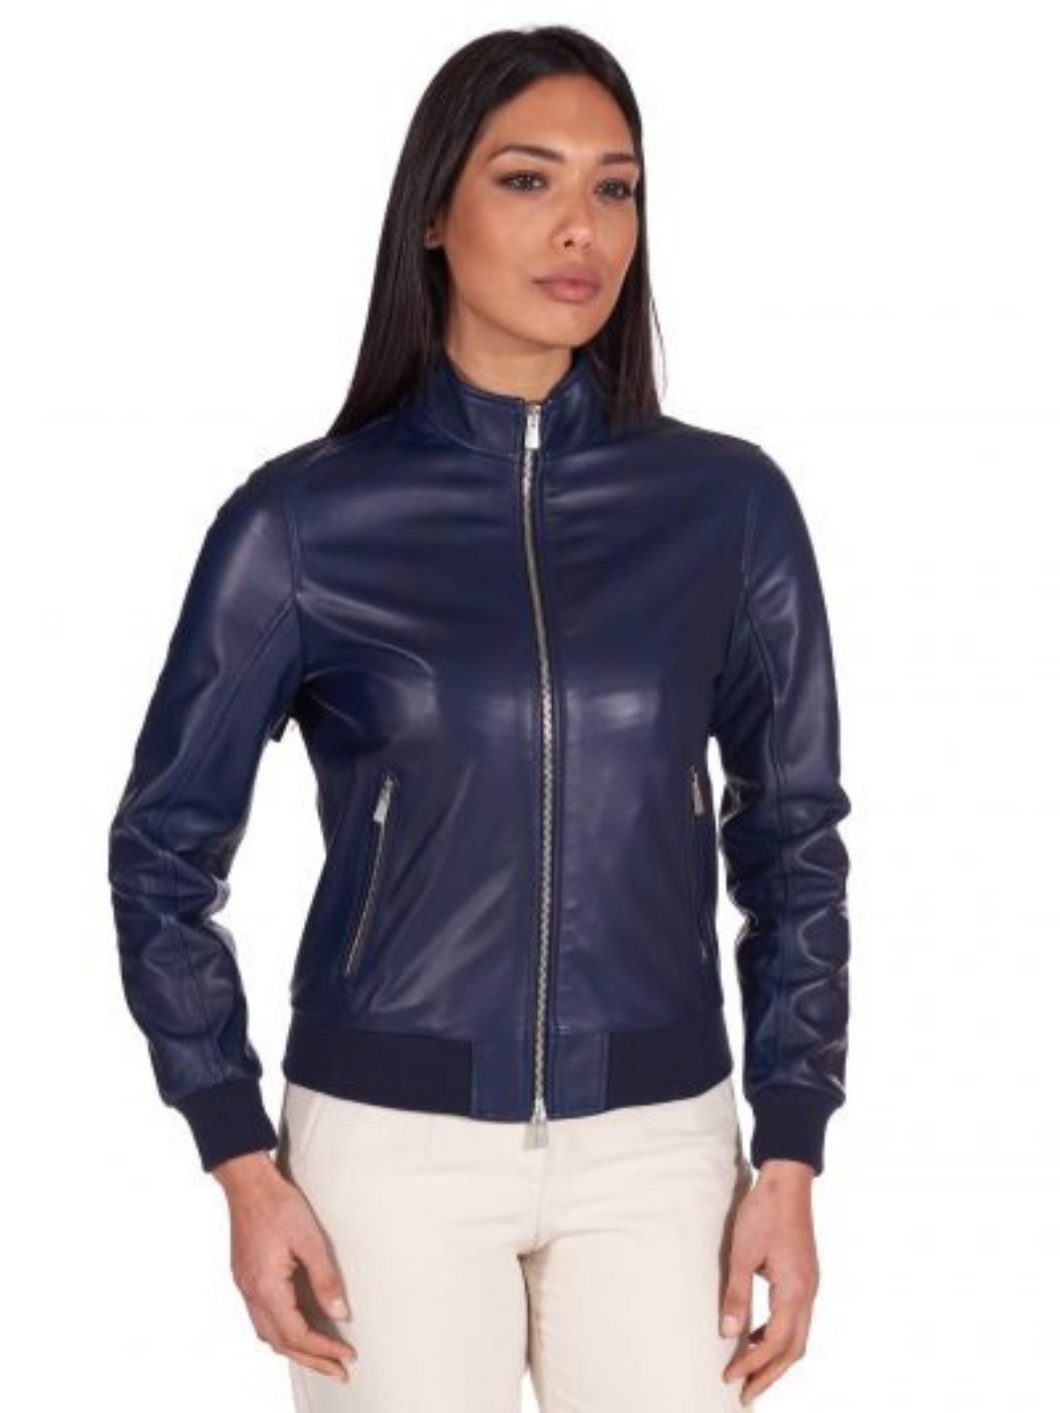 Women Navy Blue Leather Bomber Jacket